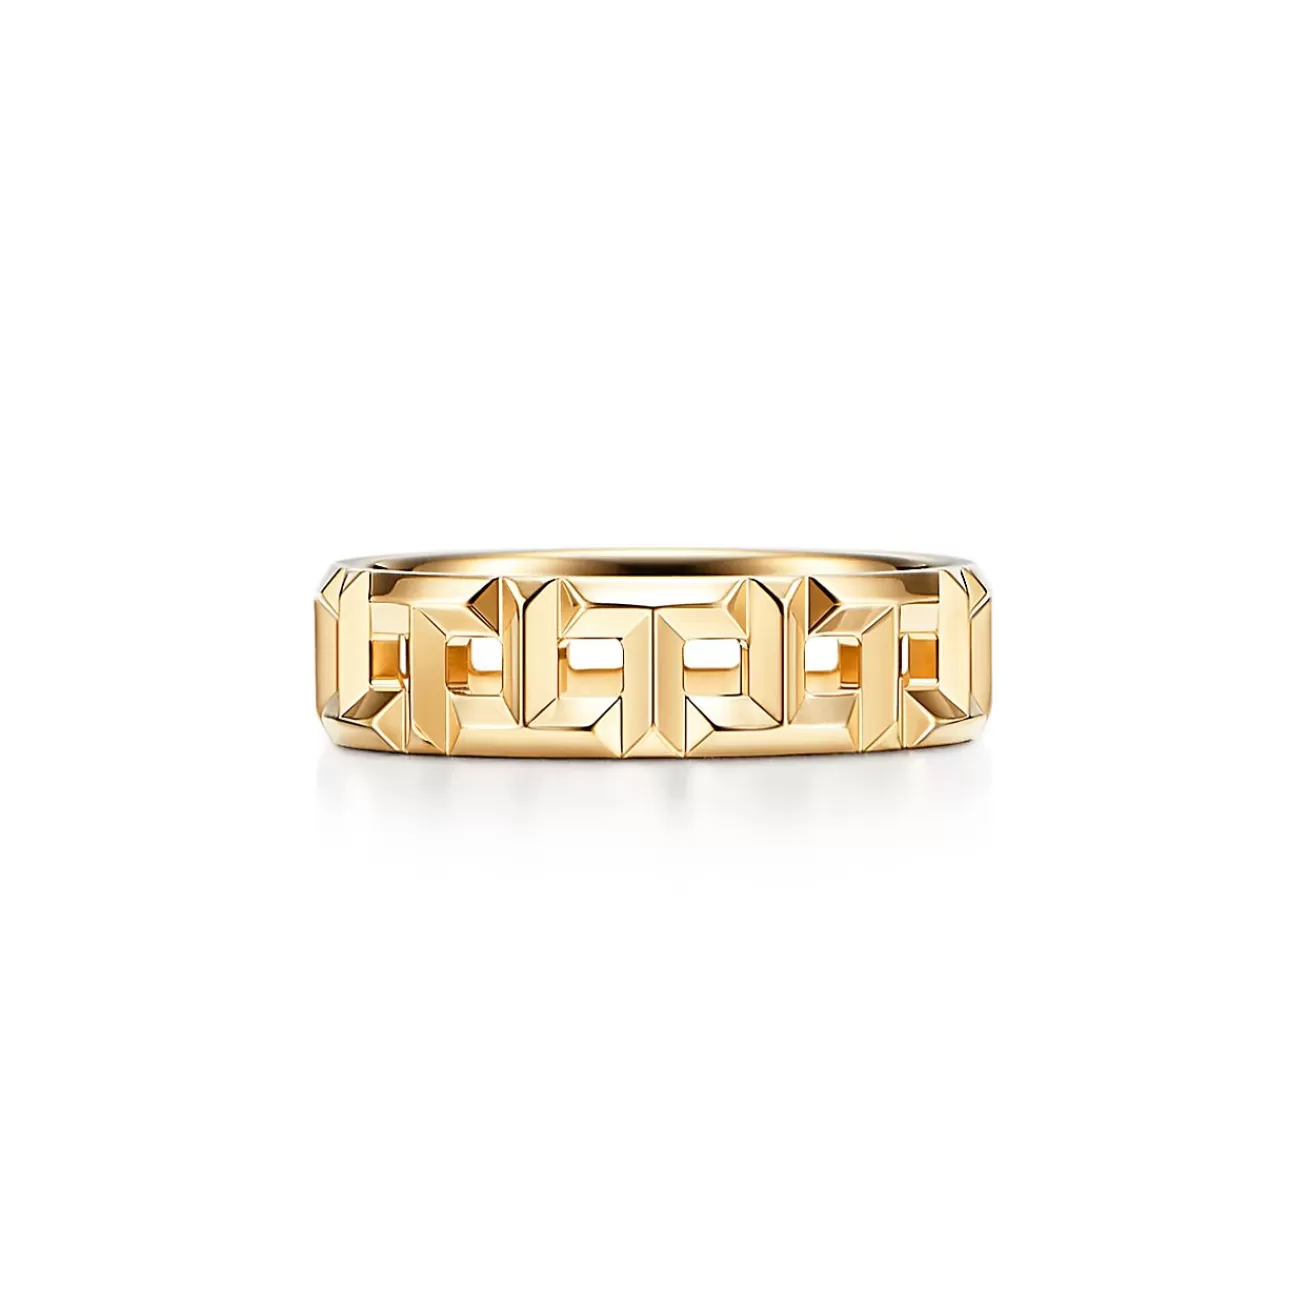 Tiffany & Co. Tiffany T True wide ring in 18k gold, 5.5 mm wide. | ^Women Rings | Men's Jewelry